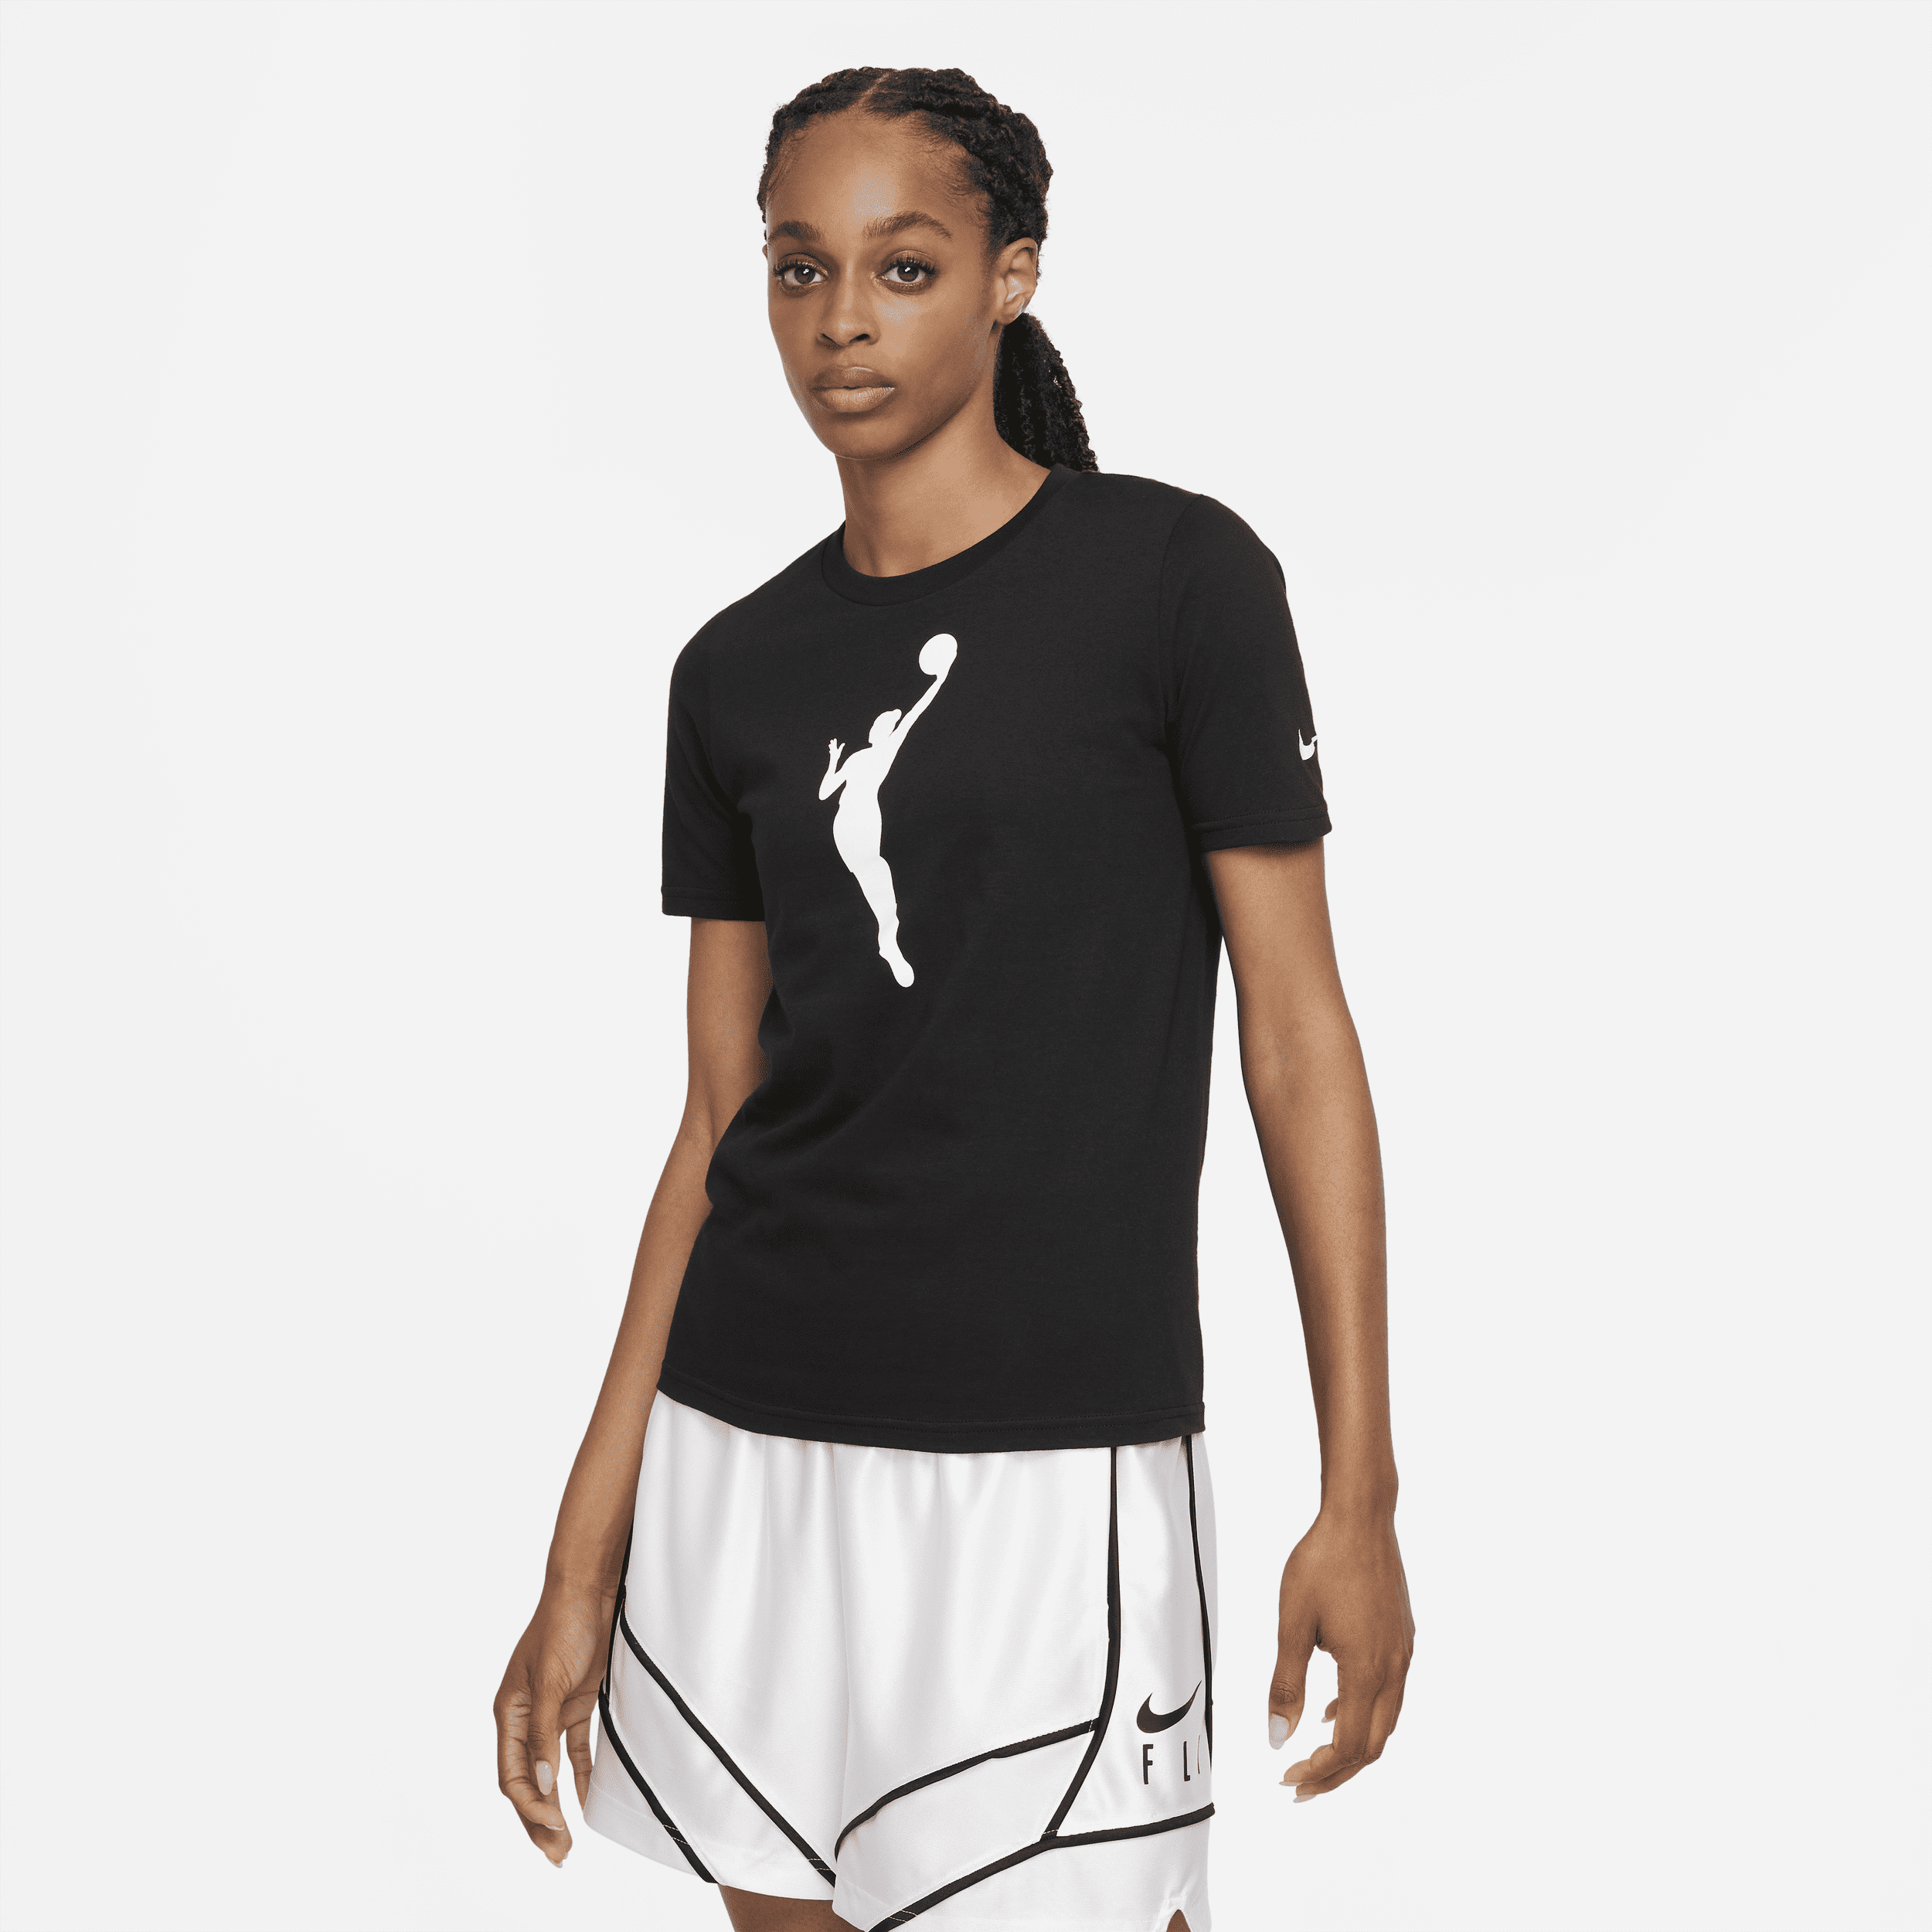 T-shirt Team 13 Nike WNBA – Ragazzo/a - Nero